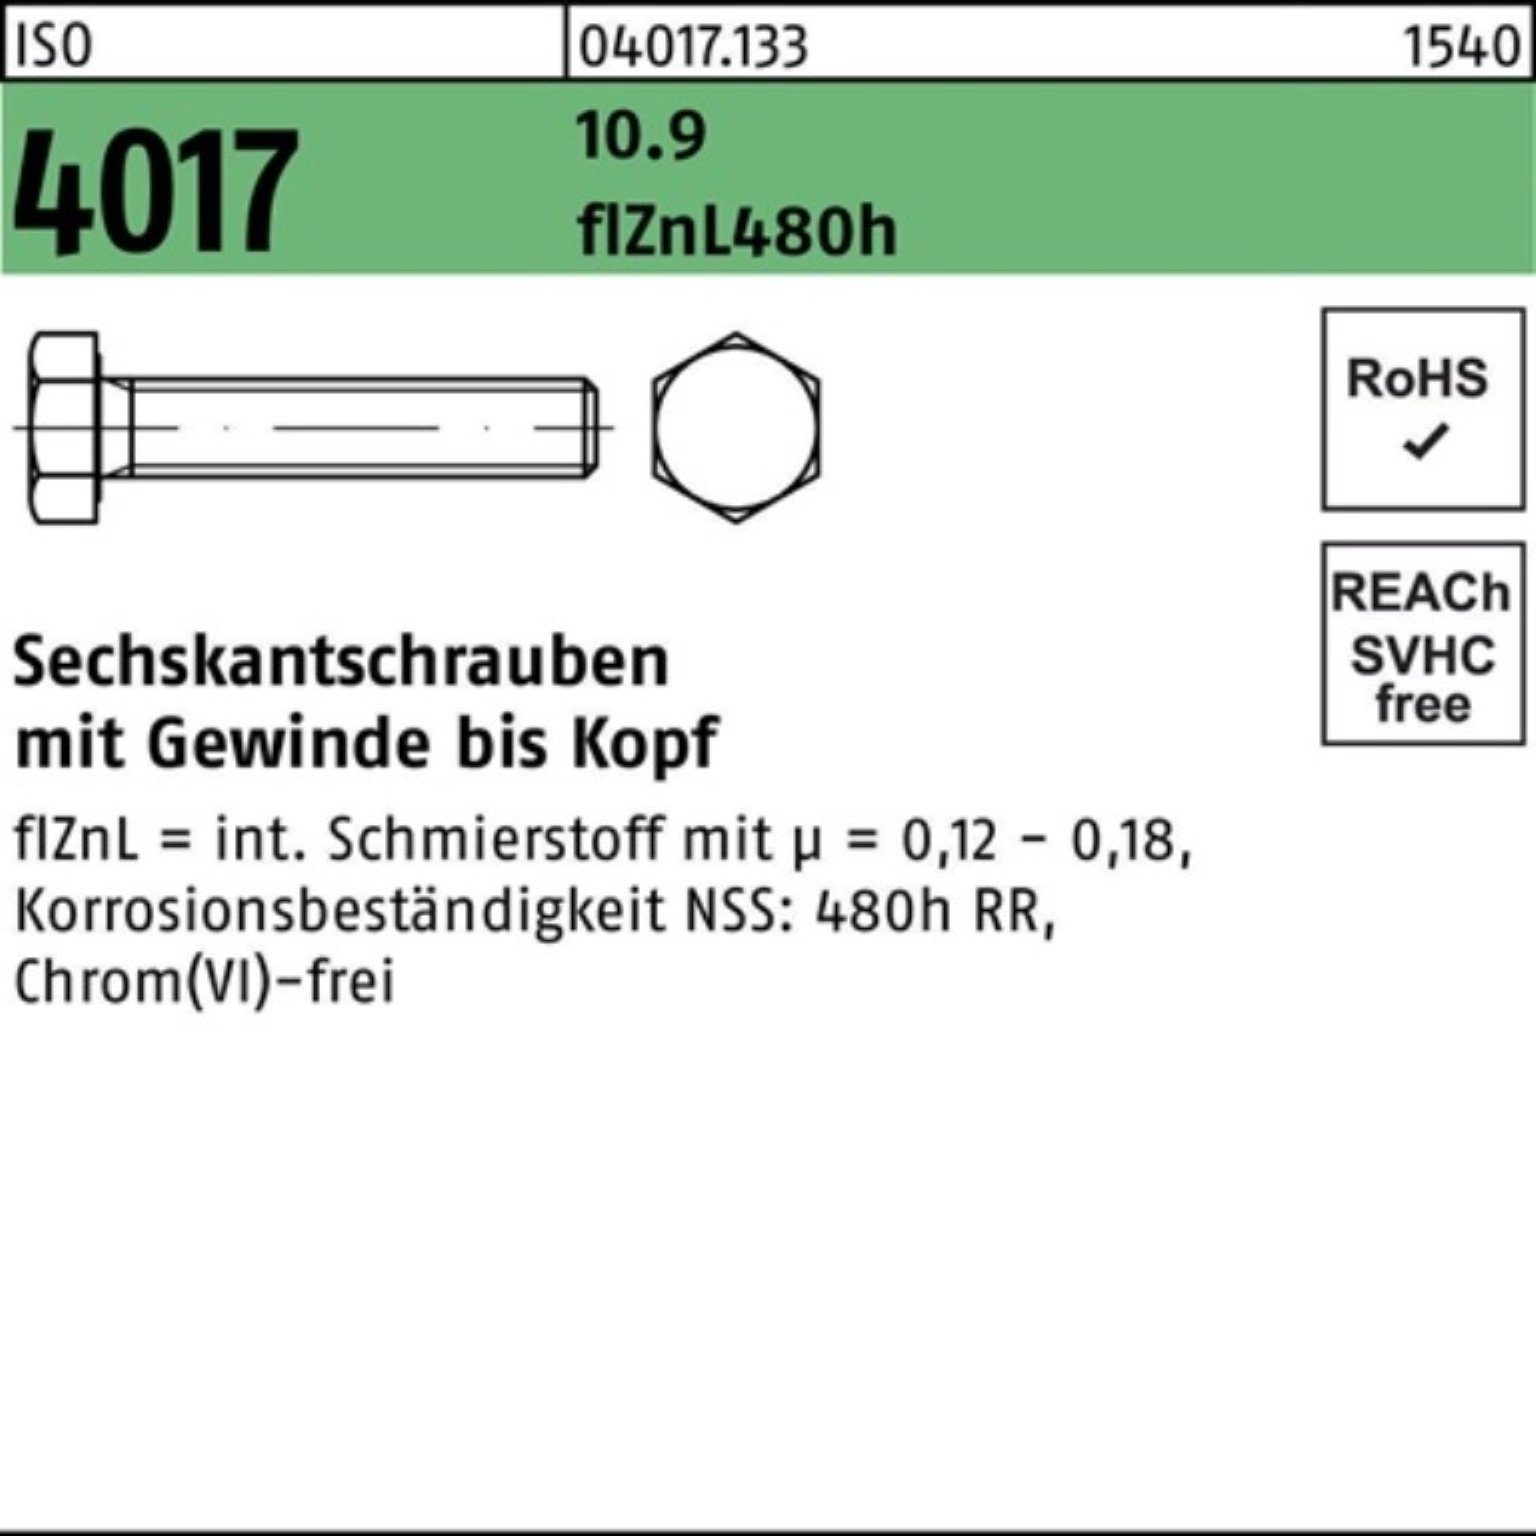 Bufab Sechskantschraube 10.9 zinklamellenb. 60 ISO Sechskantschraube VG 2 M20x 4017 100er Pack